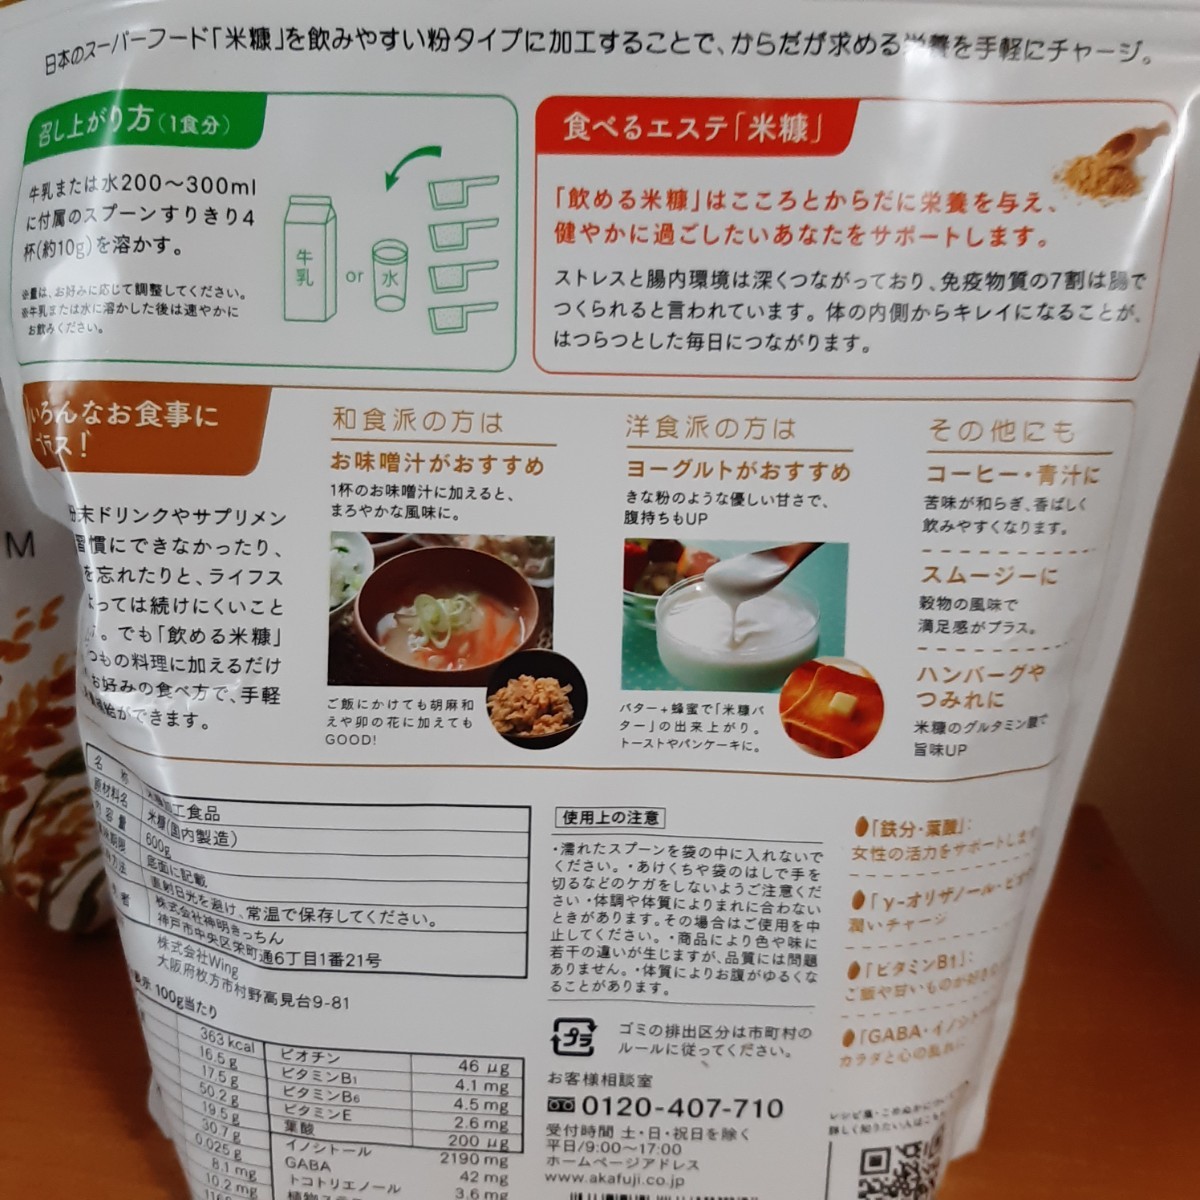 [食べるエステ 米糠]飲める米糠 600g×2袋 ファミリーパック